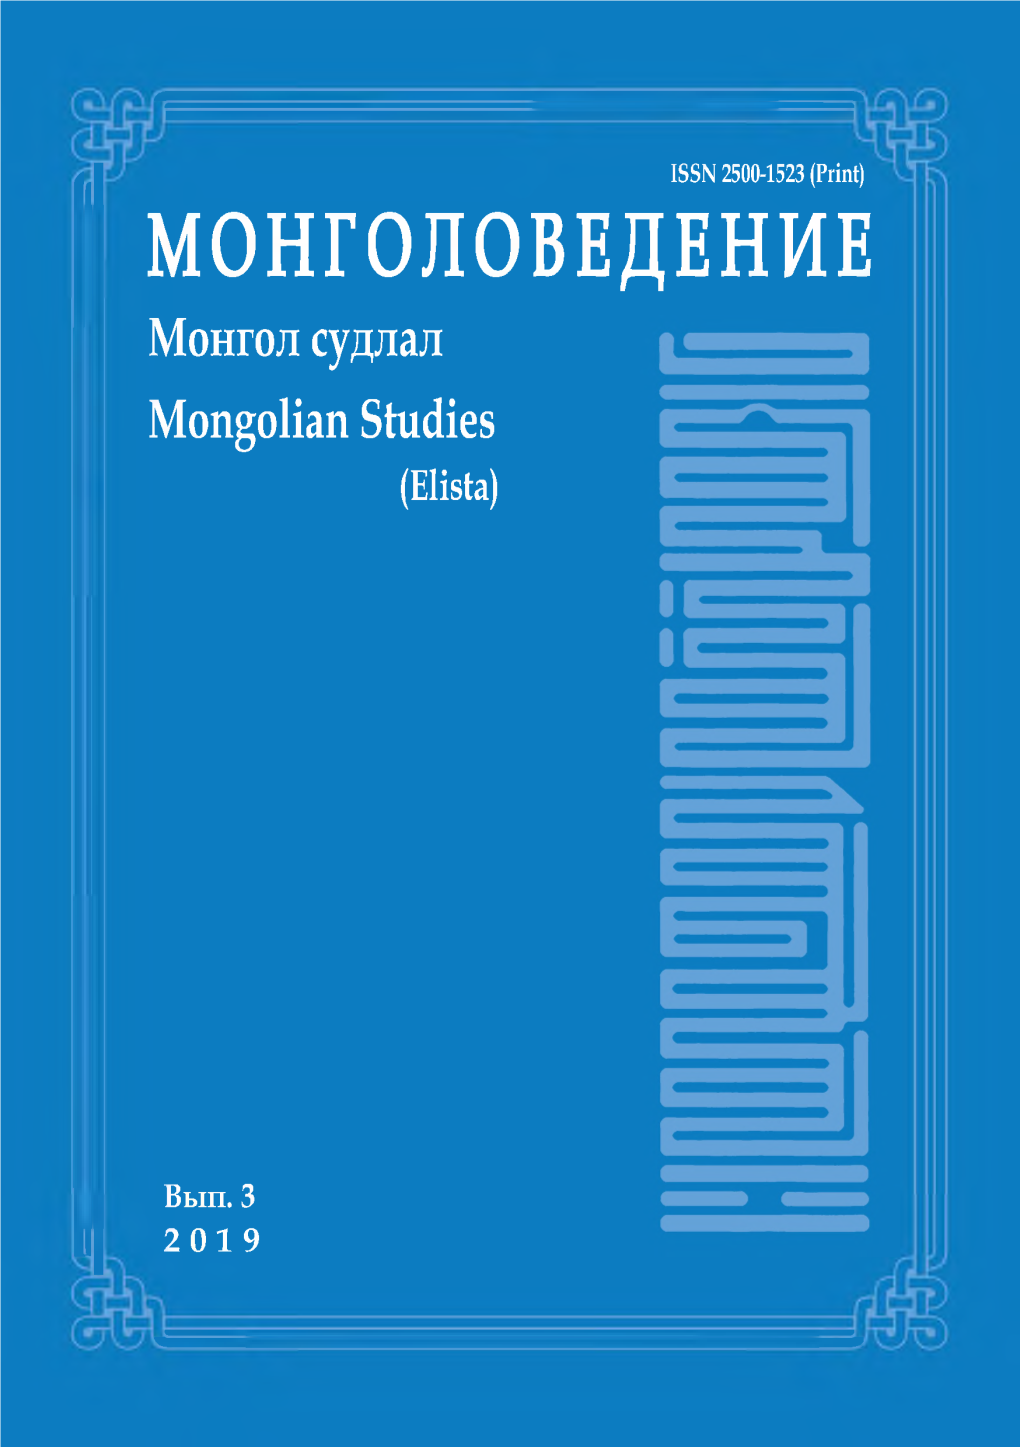 МОНГОЛОВЕДЕНИЕ Монгол Судлал Mongolian Studies (Elista)